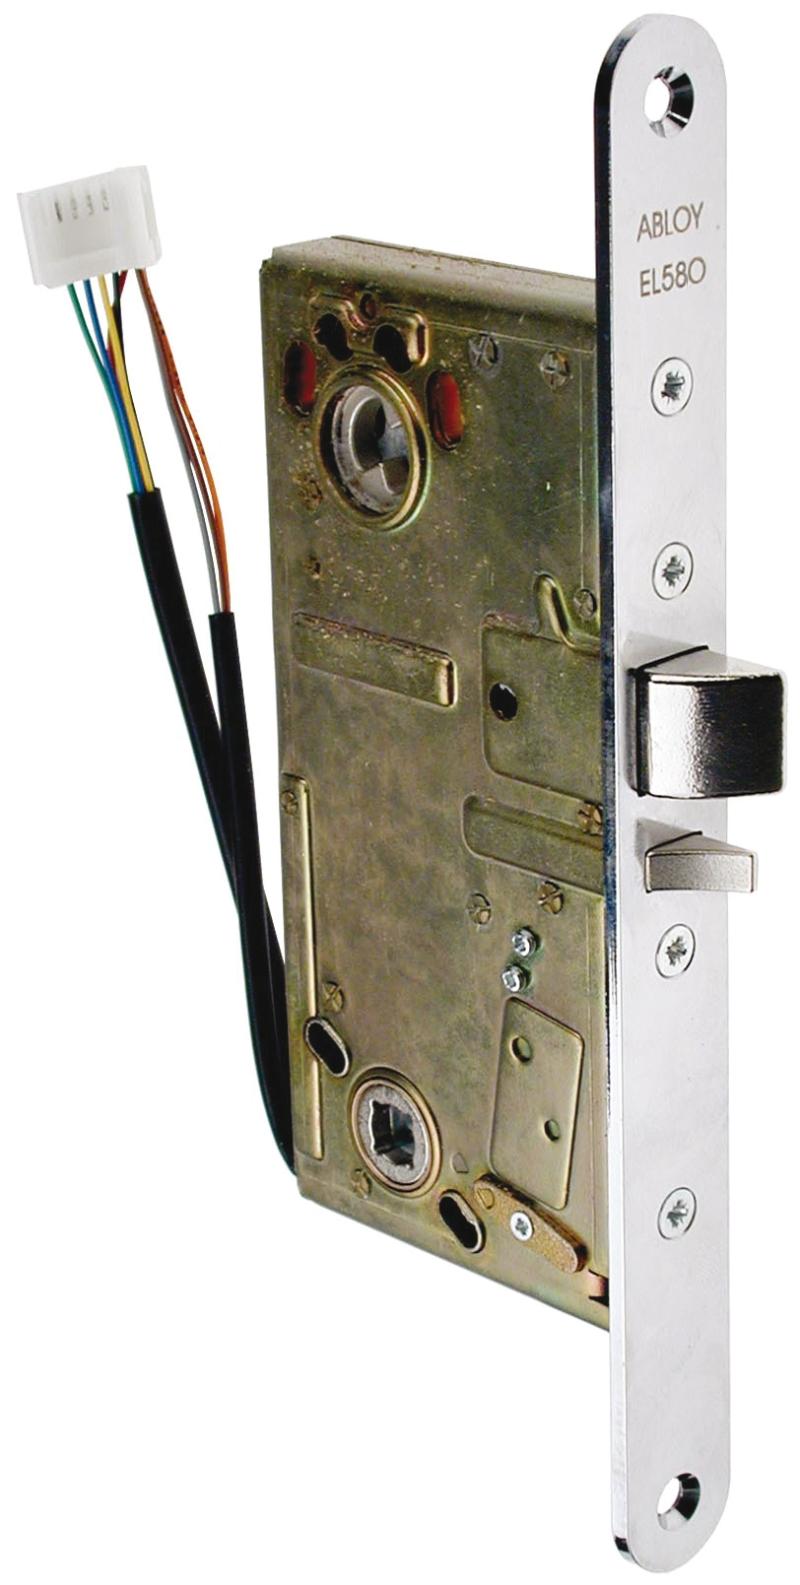 Abloy magnetic lock PE580, mandrel 50 mm (968986)